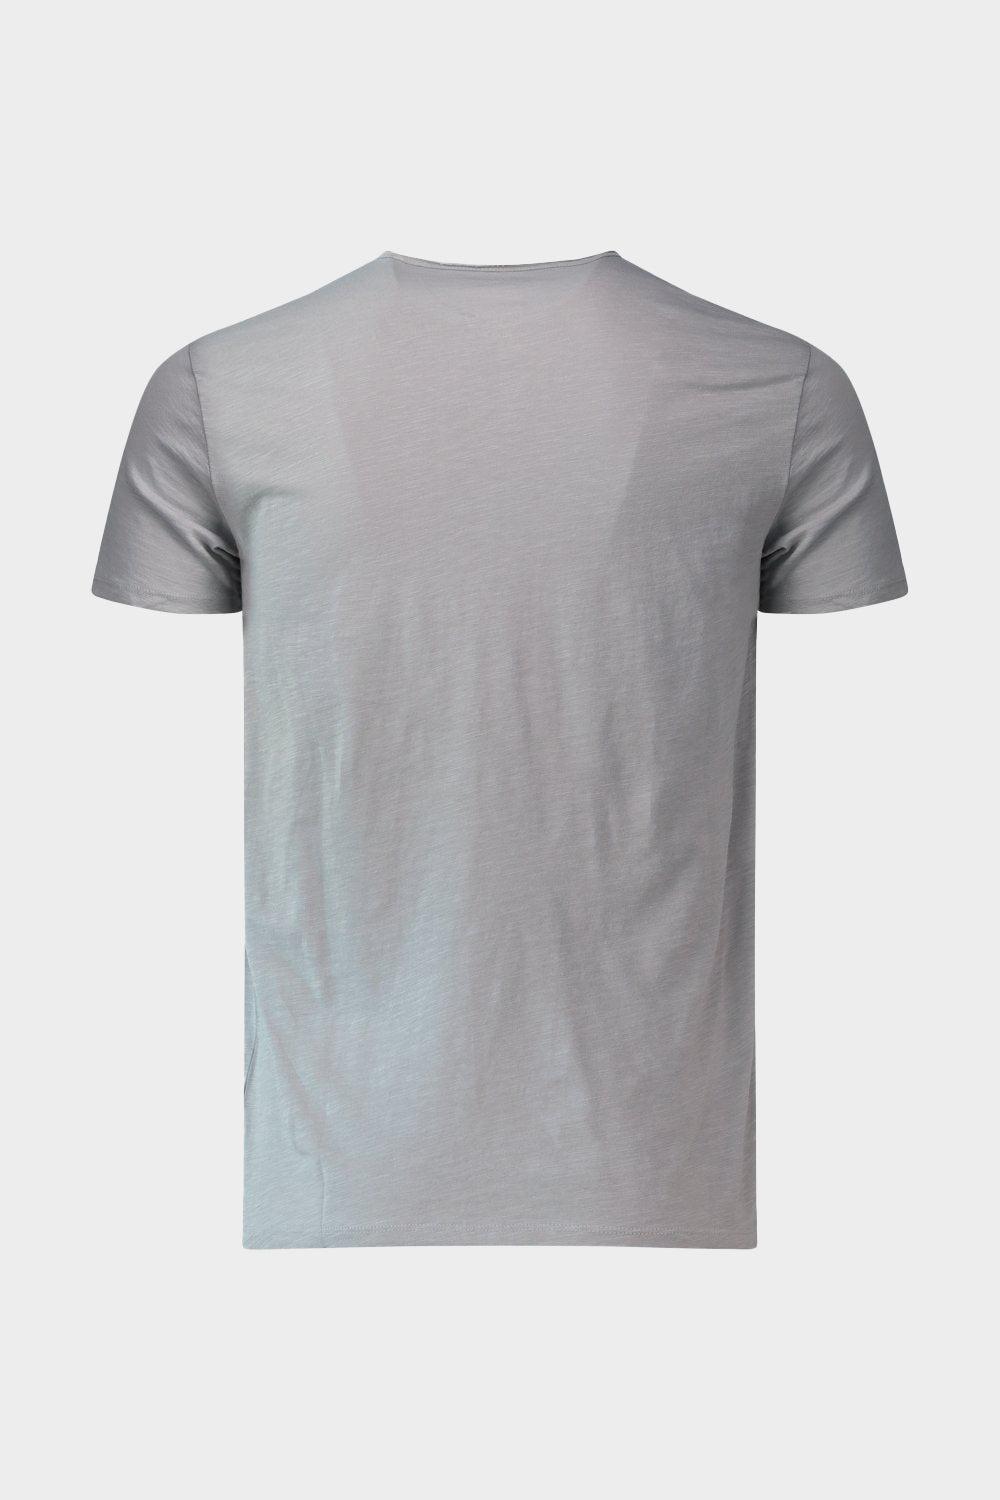 חולצת טי שירט לגברים כיס קדמי MARC O'POLO Vendome online | ונדום .